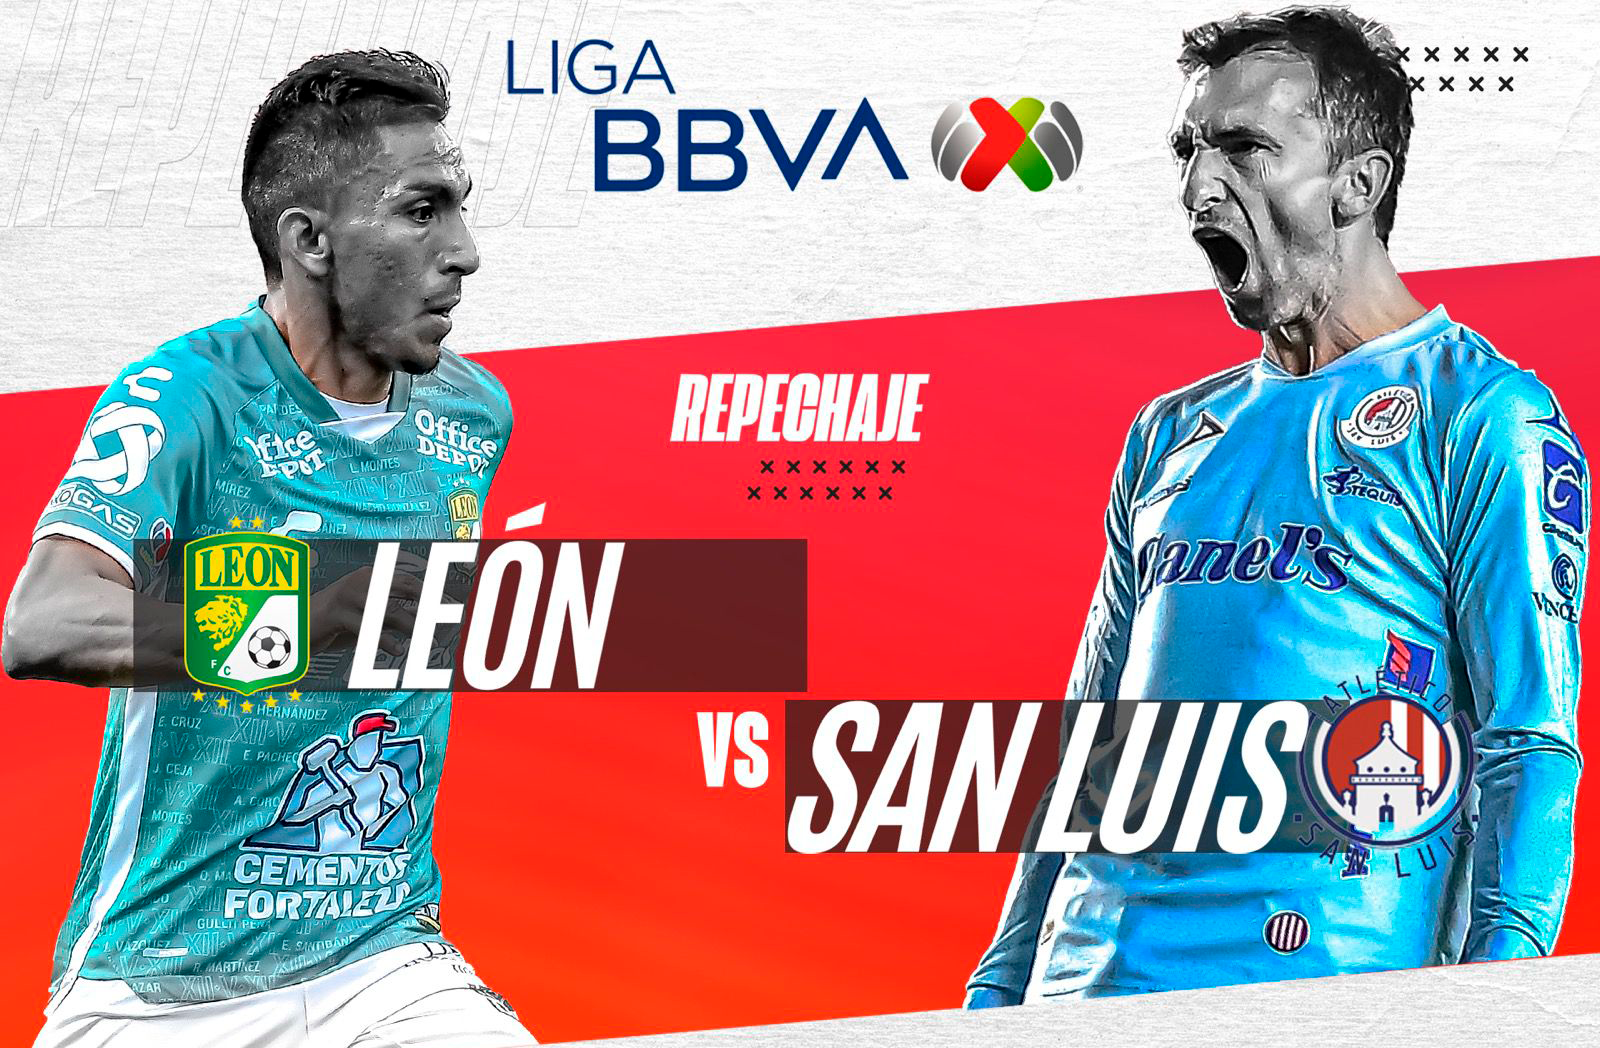 León vs San Luis, EN VIVO, horario y canal, Repechaje Liga MX : León vs San  Luis, EN VIVO, horario y canal, Repechaje Liga MX